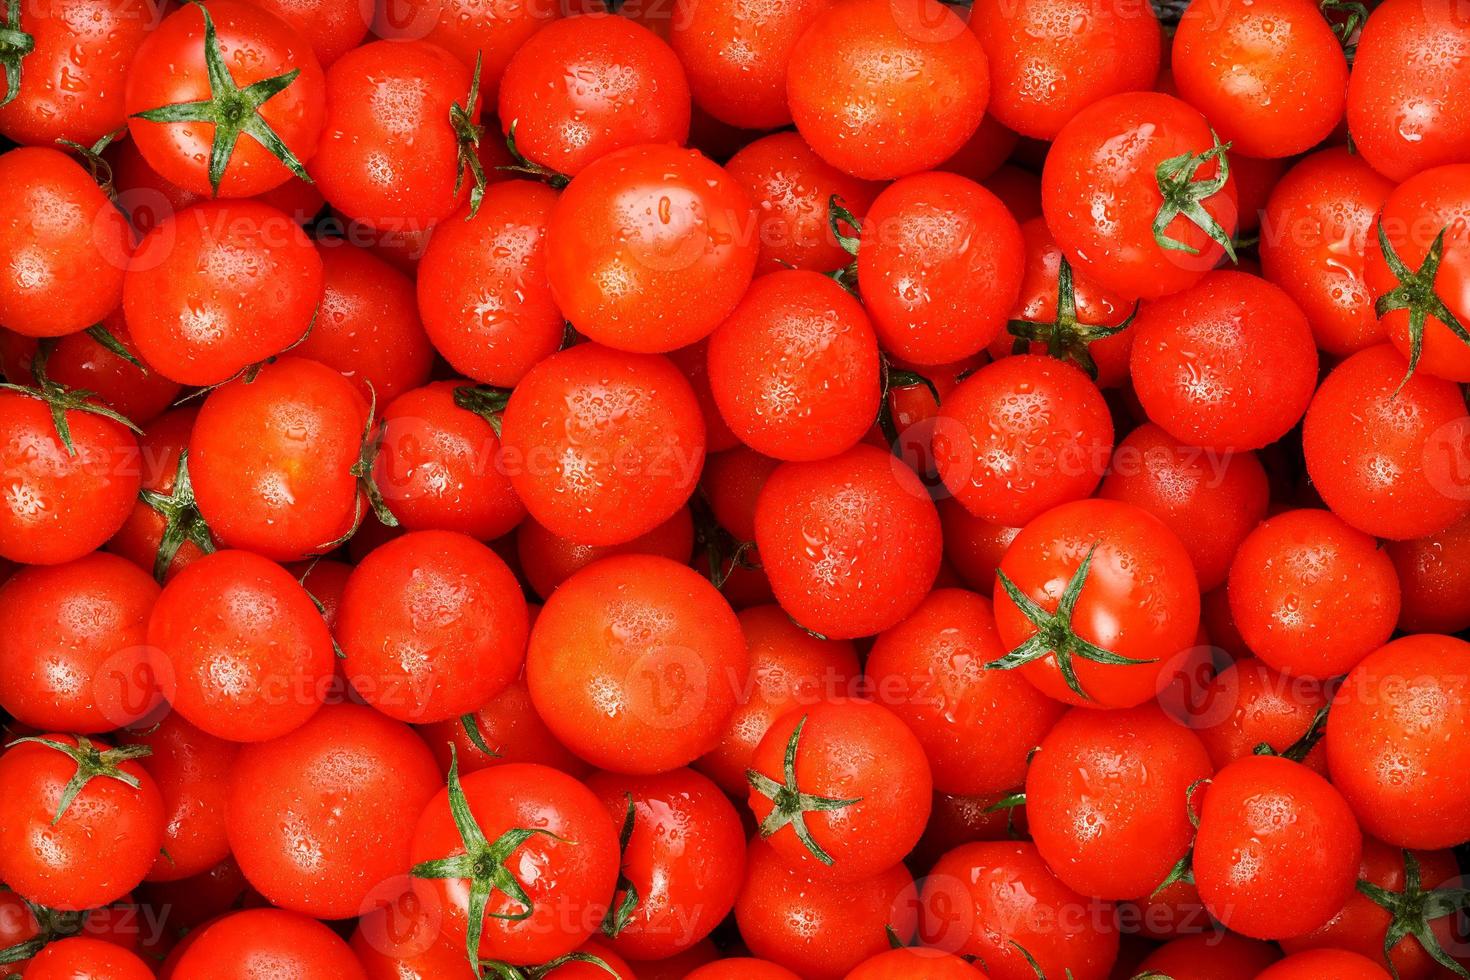 beaucoup de tomates mûres fraîches avec des gouttes de rosée. fond en gros plan avec texture de coeurs rouges avec des queues vertes. tomates cerises fraîches aux feuilles vertes. fond rouge tomates photo